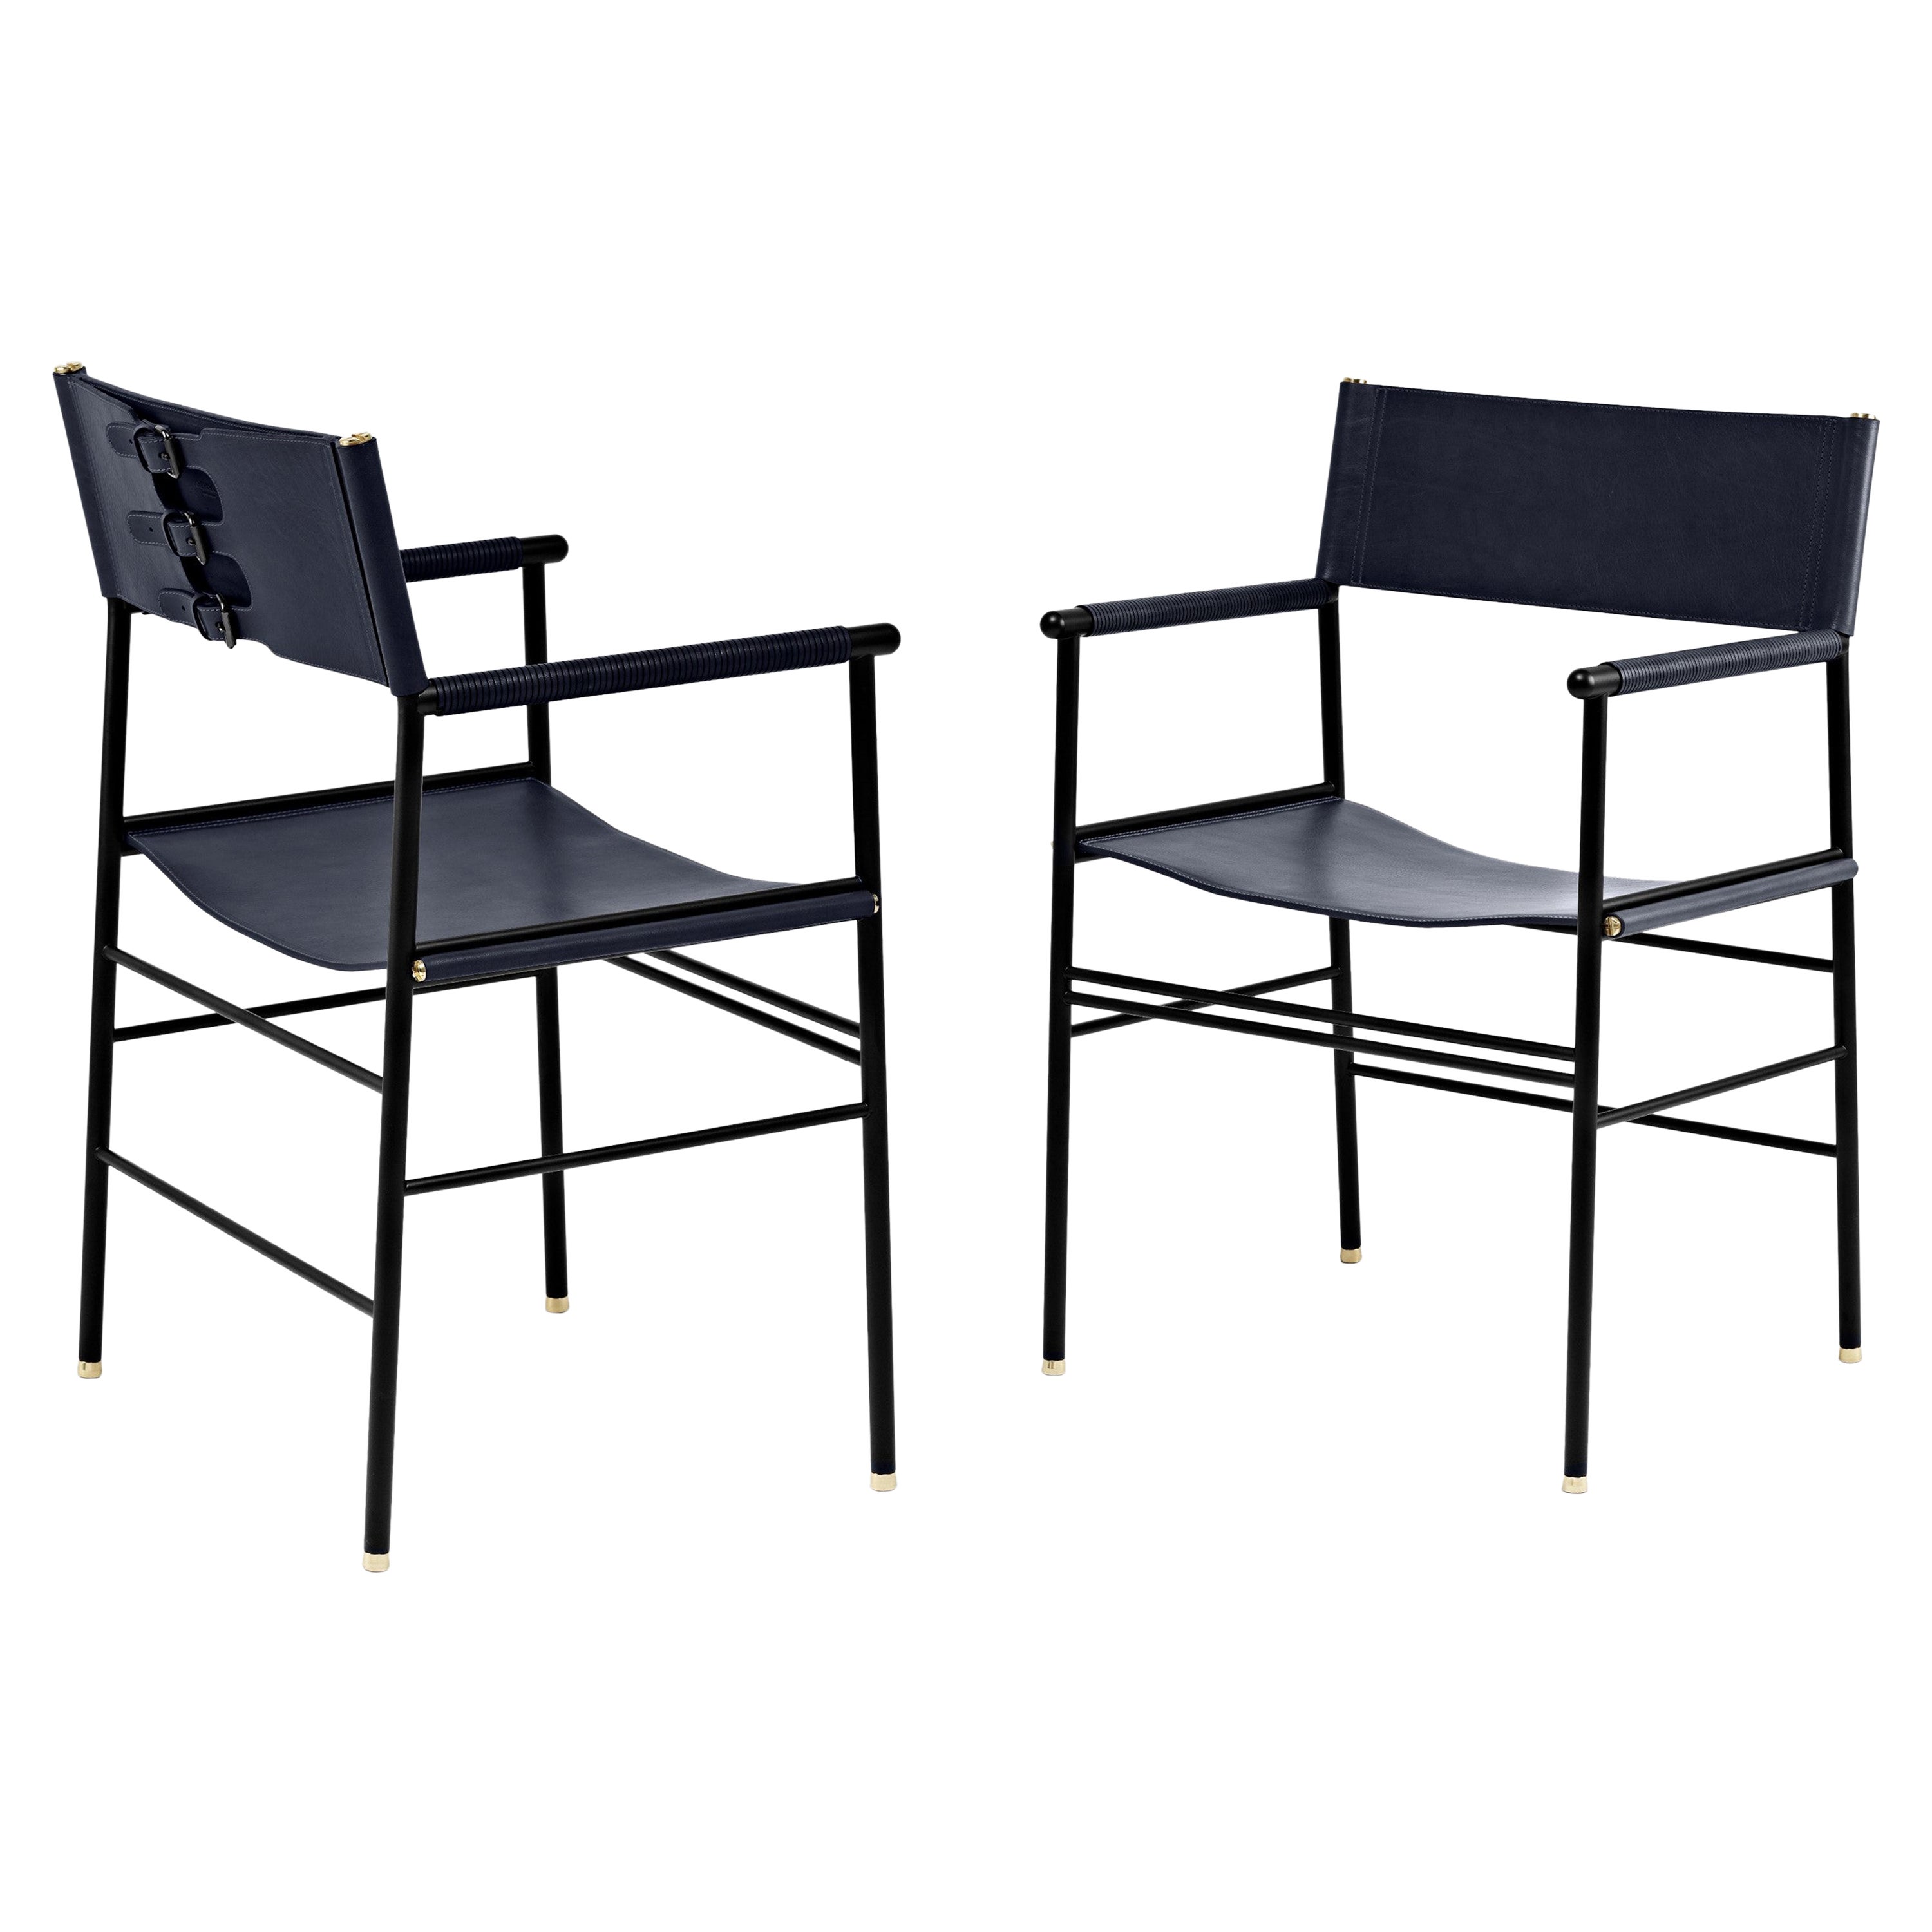 Paire de chaises classiques et contemporaines artisanales en cuir bleu marine et métal en caoutchouc noir